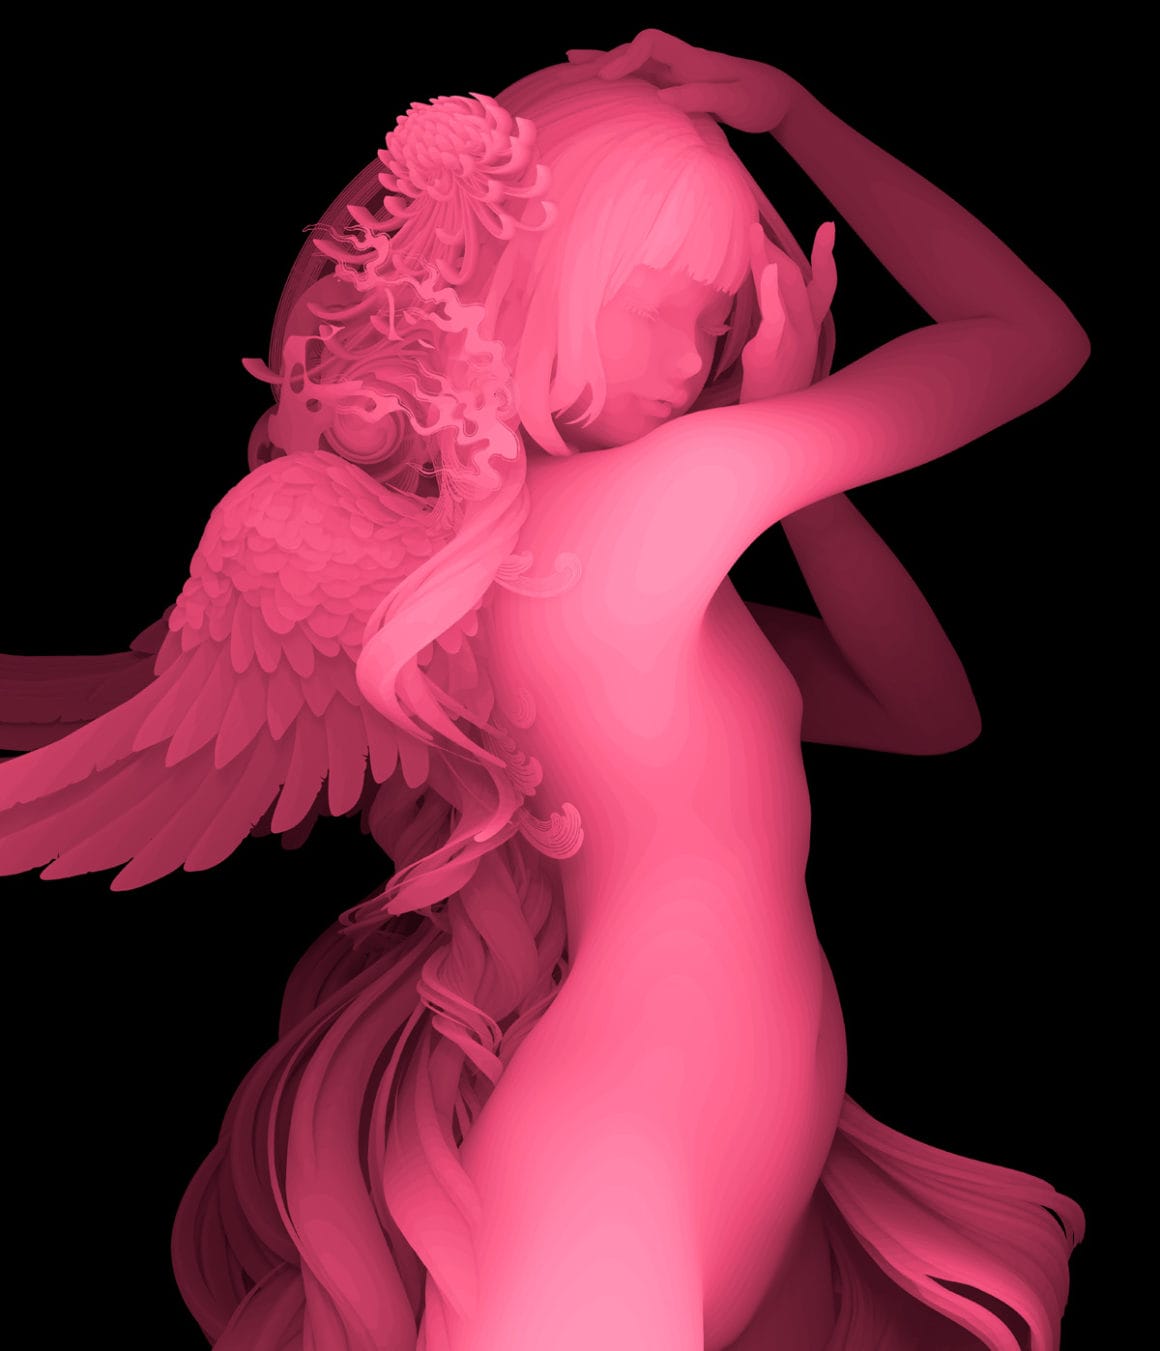 Femme nue toute rose, elle prend la pose. Elle a des ailes dans son dos et des fleurs dans ses cheveux.